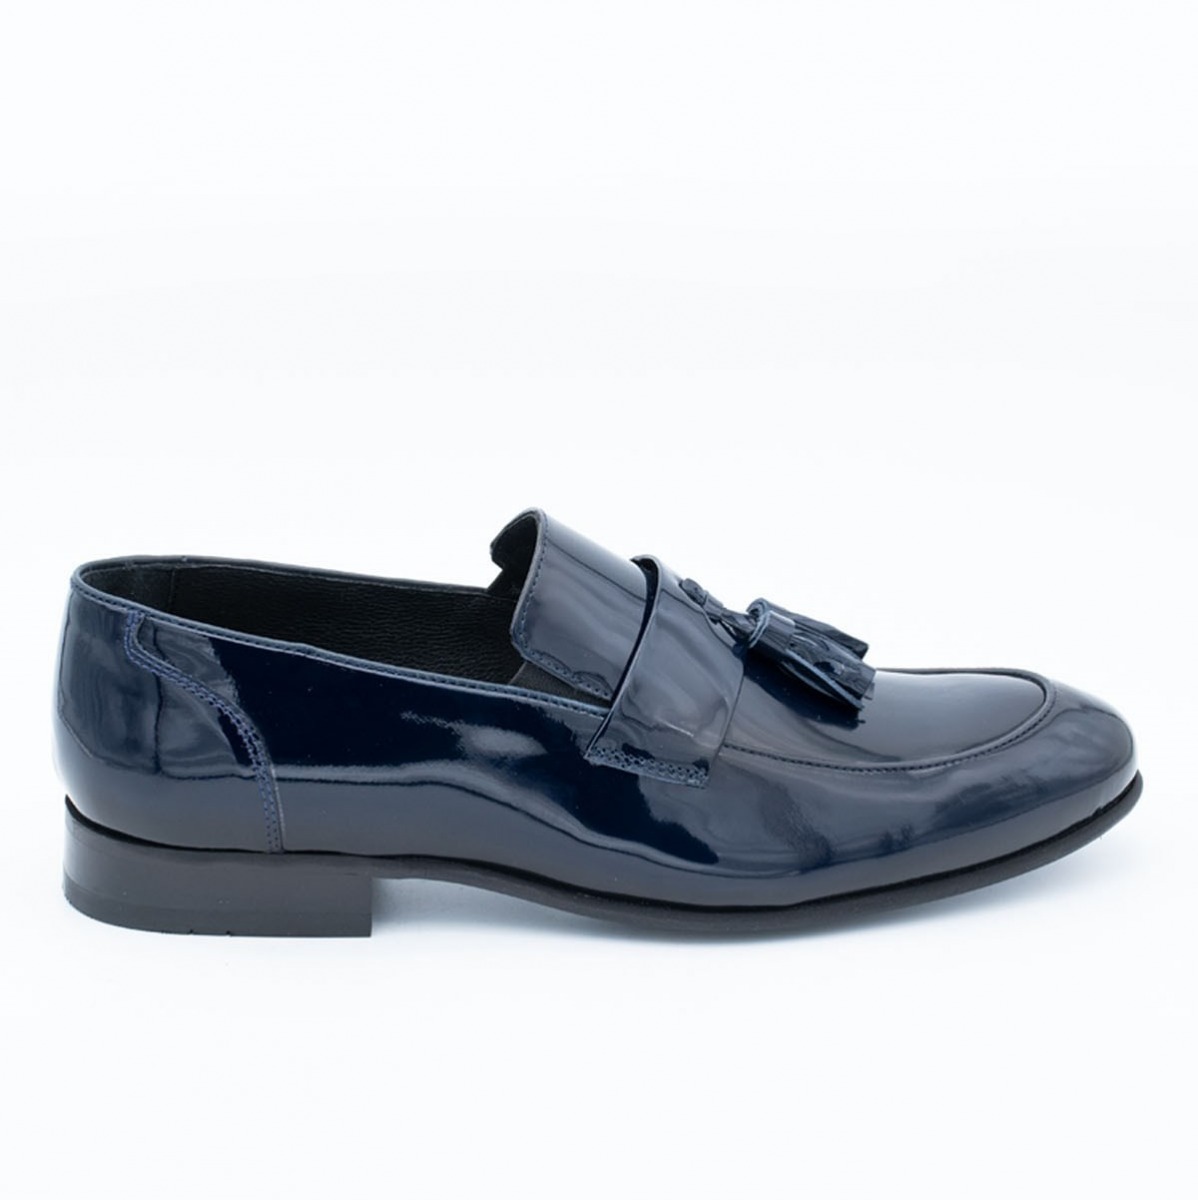 Flo Erkek Deri Klasik Ayakkabı İ1811459-1 M 1000 LACİVERT RUGAN. 3